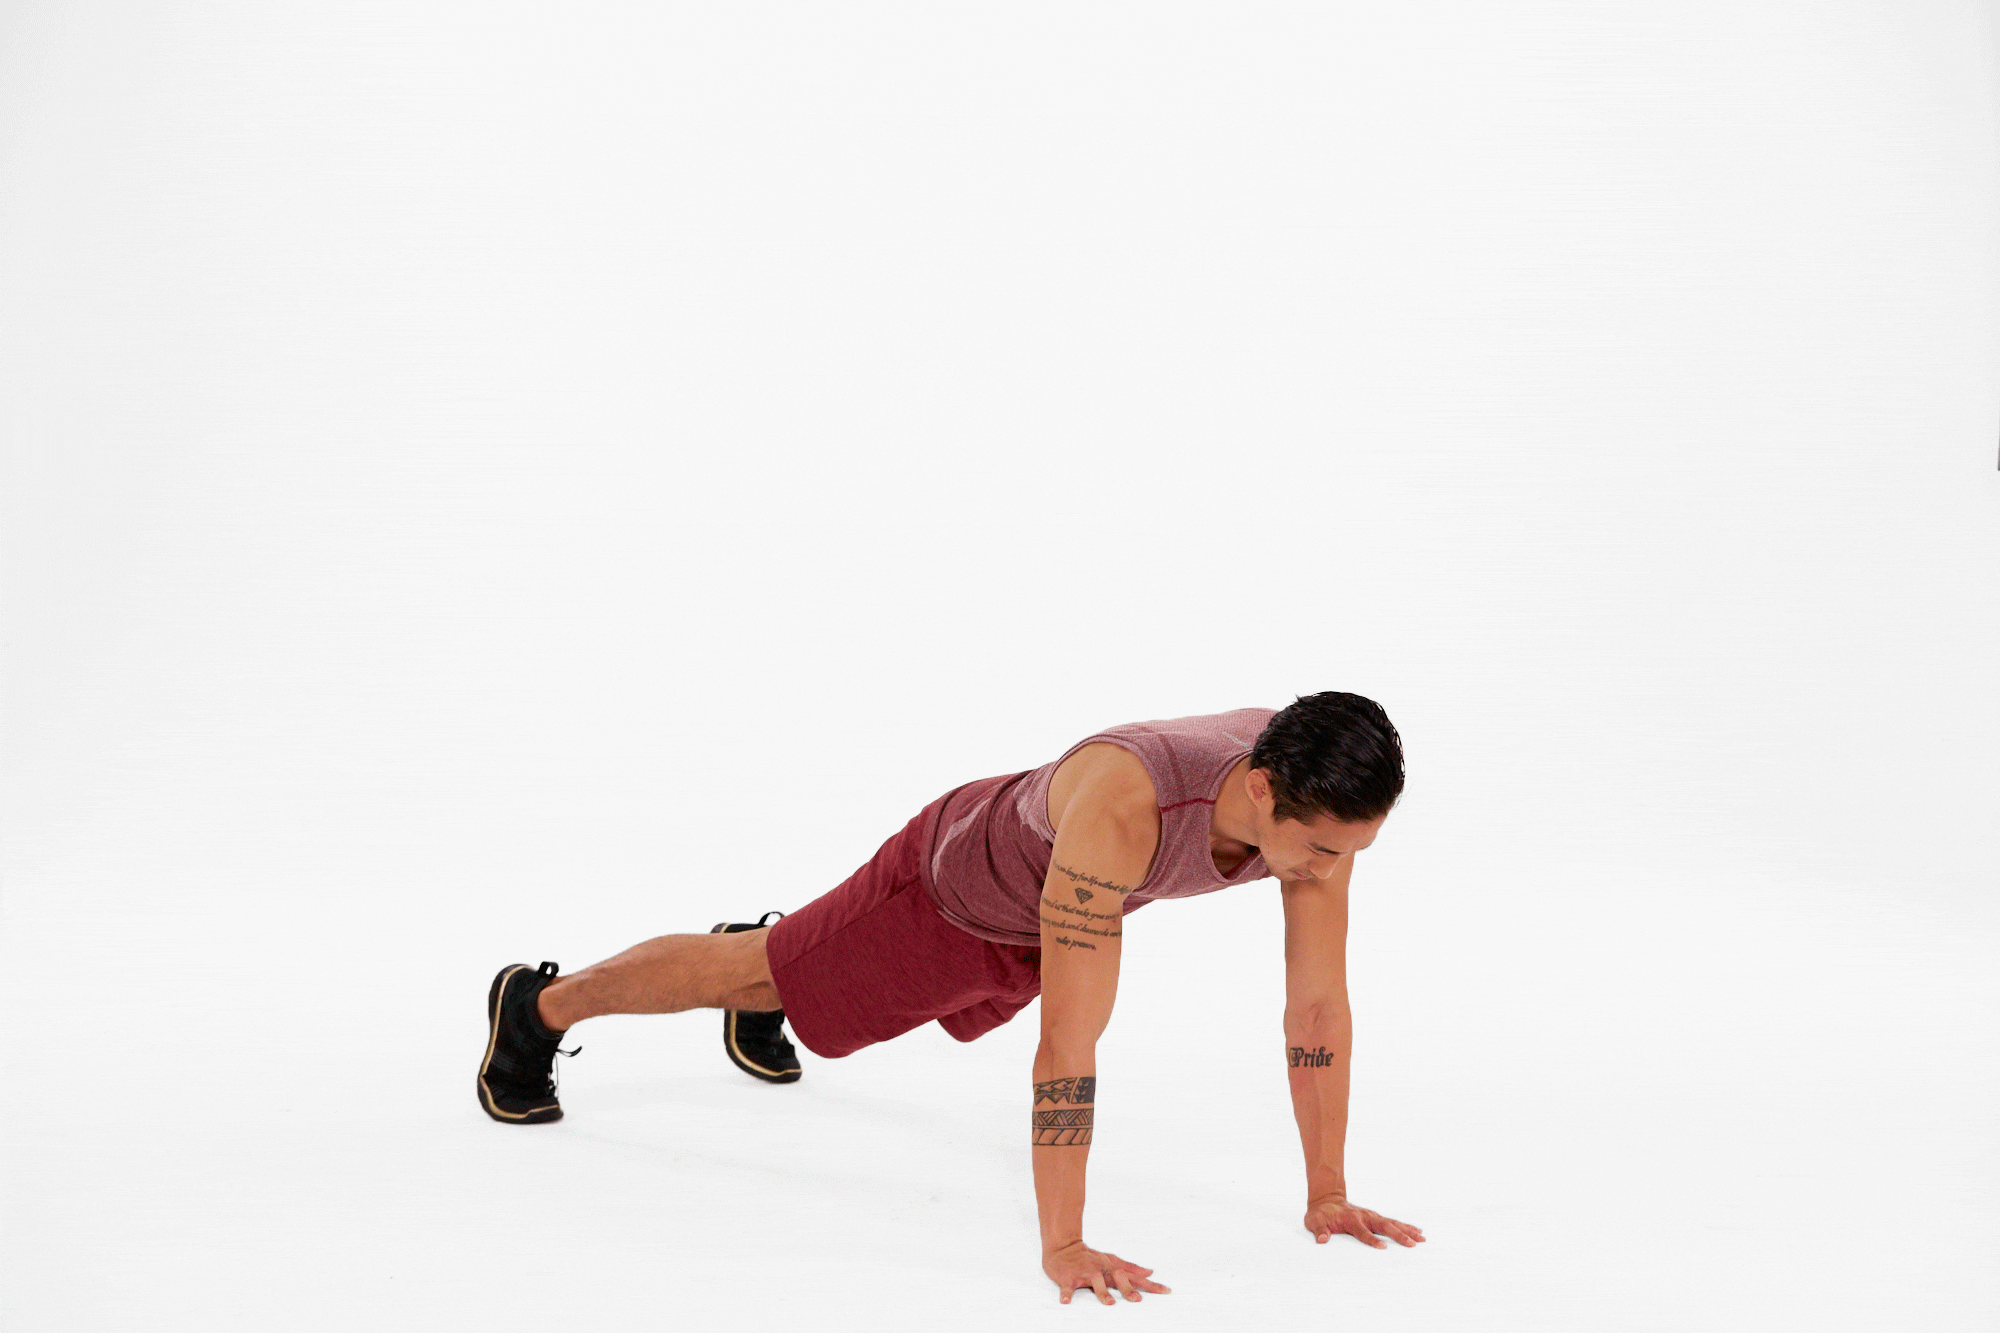 plank raise tap crunch | shoulder workouts